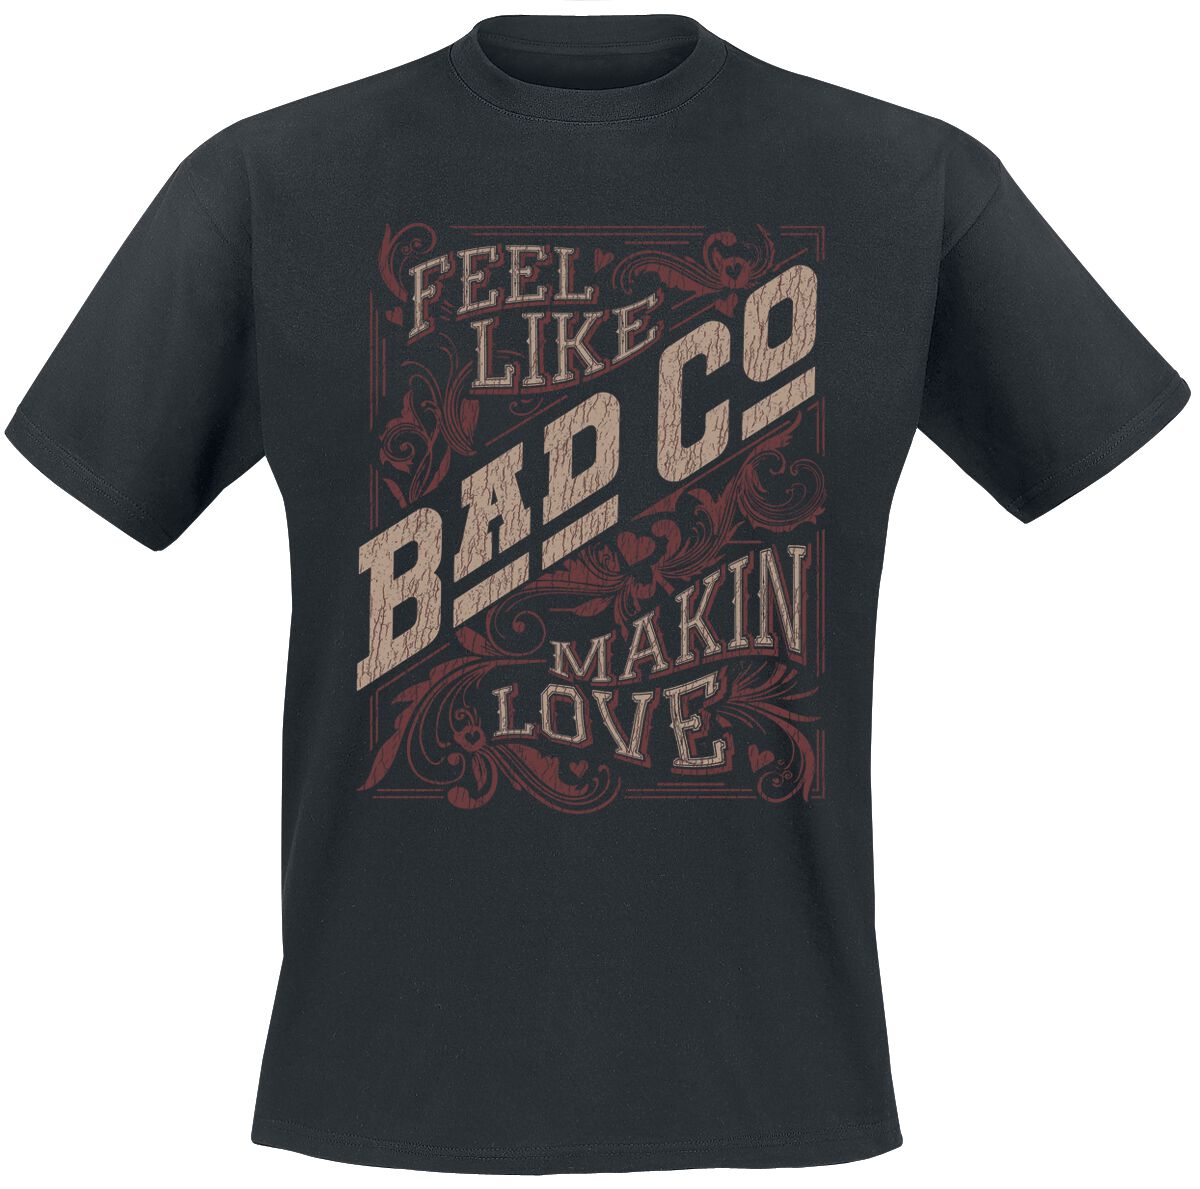 Bad Company Makin Love T-Shirt schwarz in L